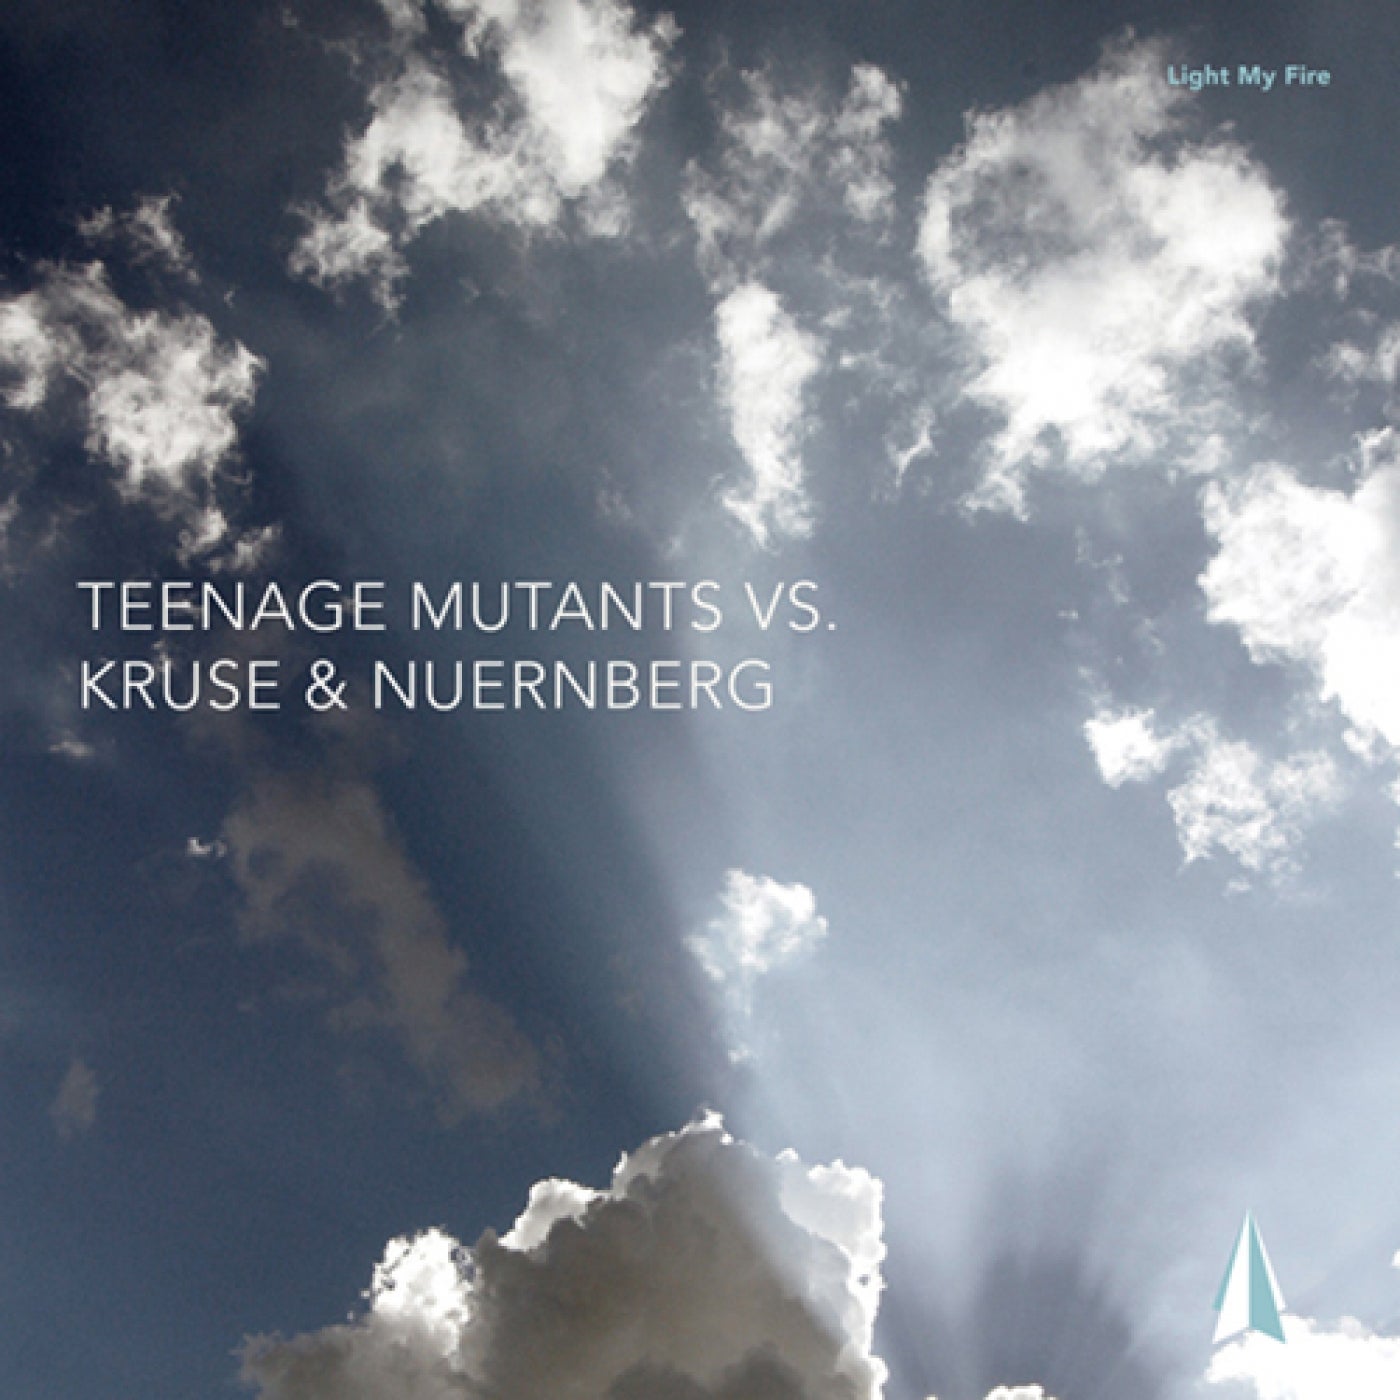 Teenage Mutants Vs. Kruse & Nuernberg